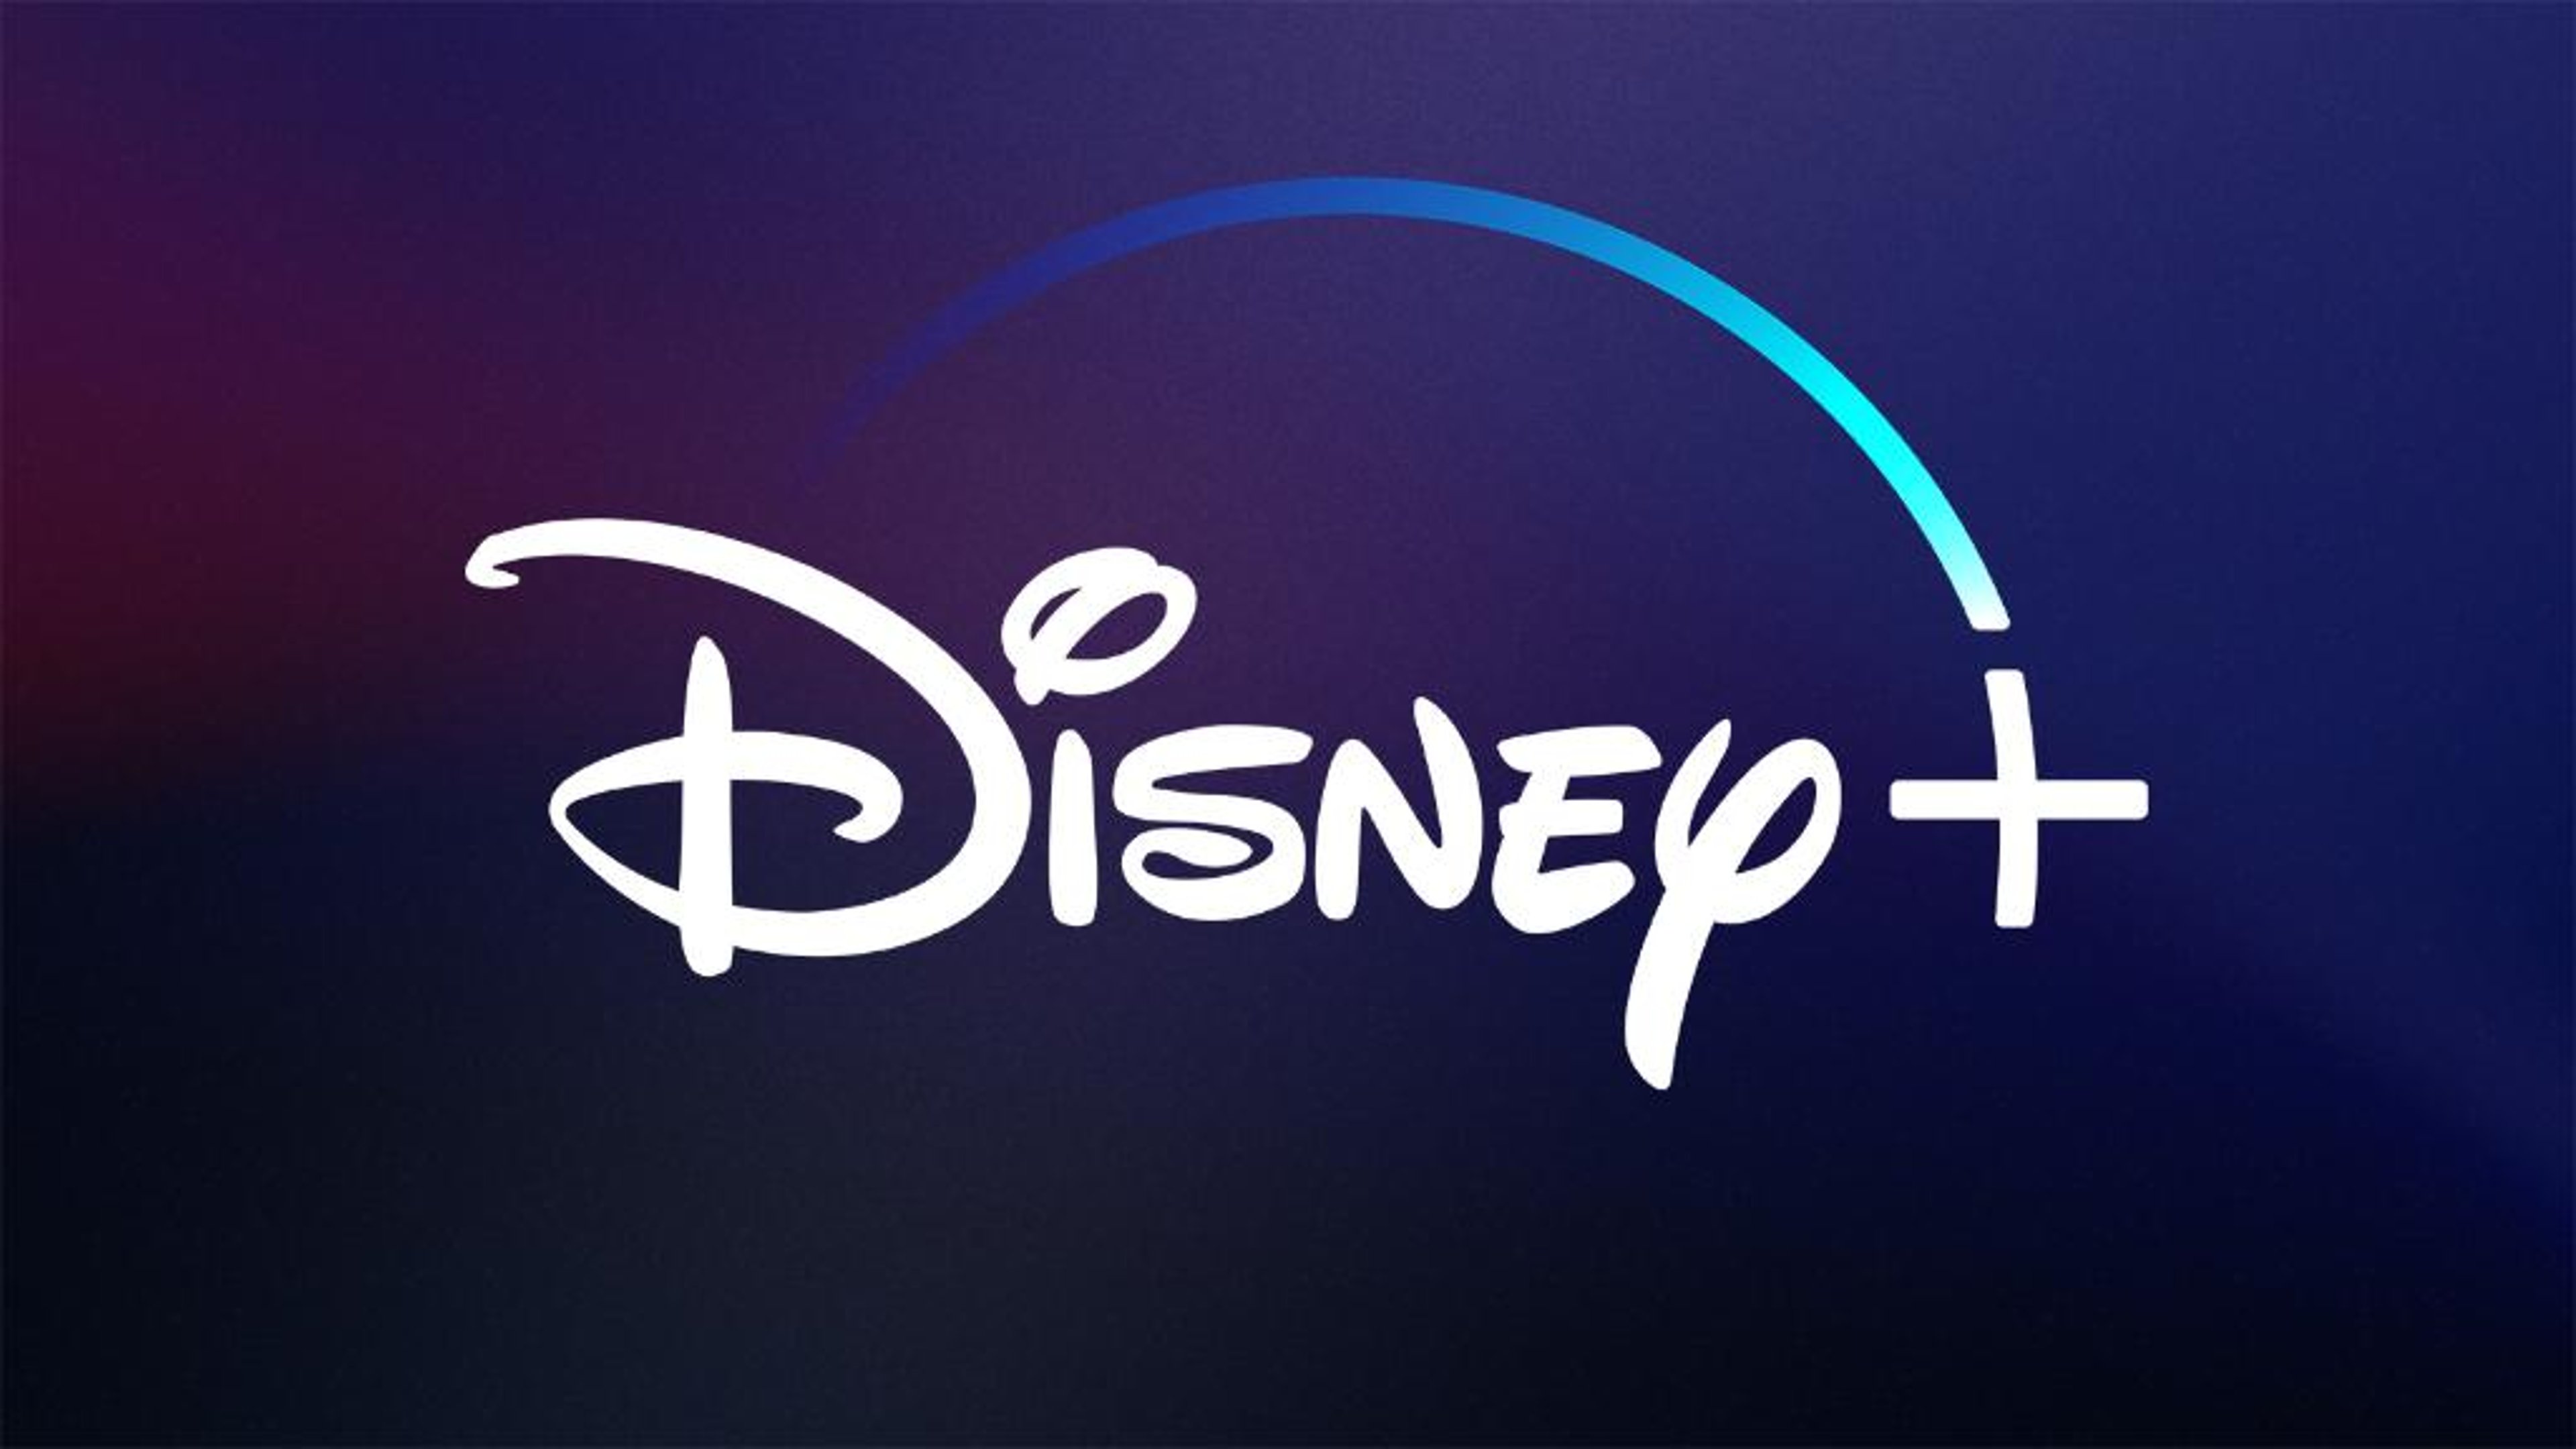 Disney+ è realtà! Il debutto è previsto per il prossimo 12 Novembre Cover